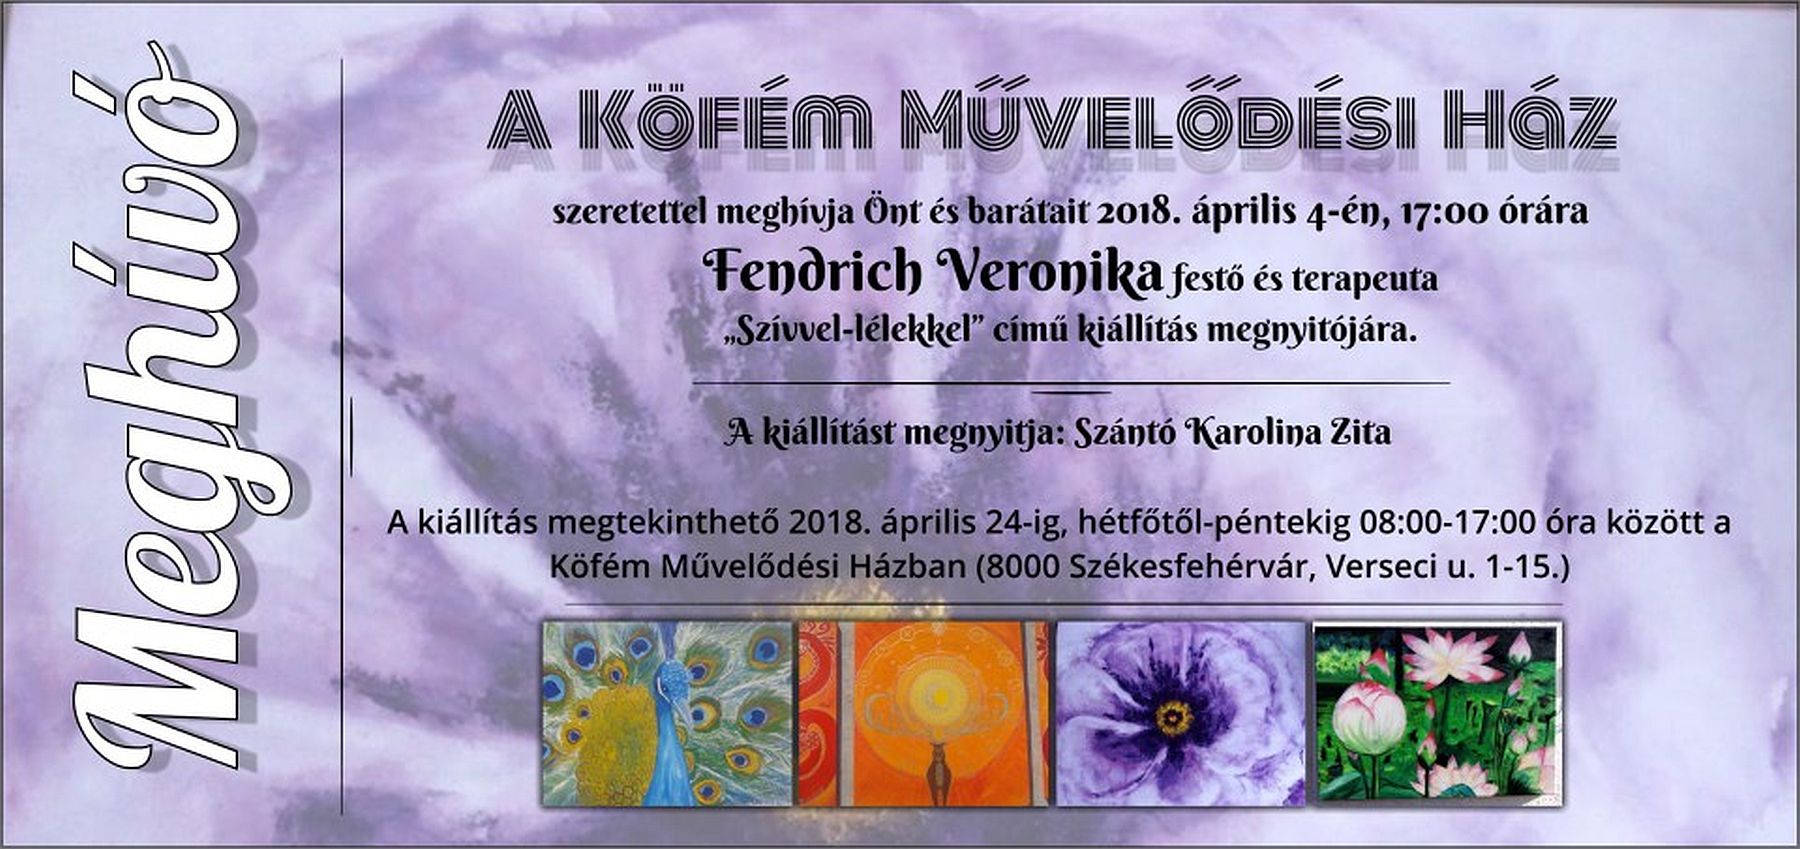 Szívvel-lélekkel - Fendrich Veronika kiállítása a Köfém Művelődési Házban